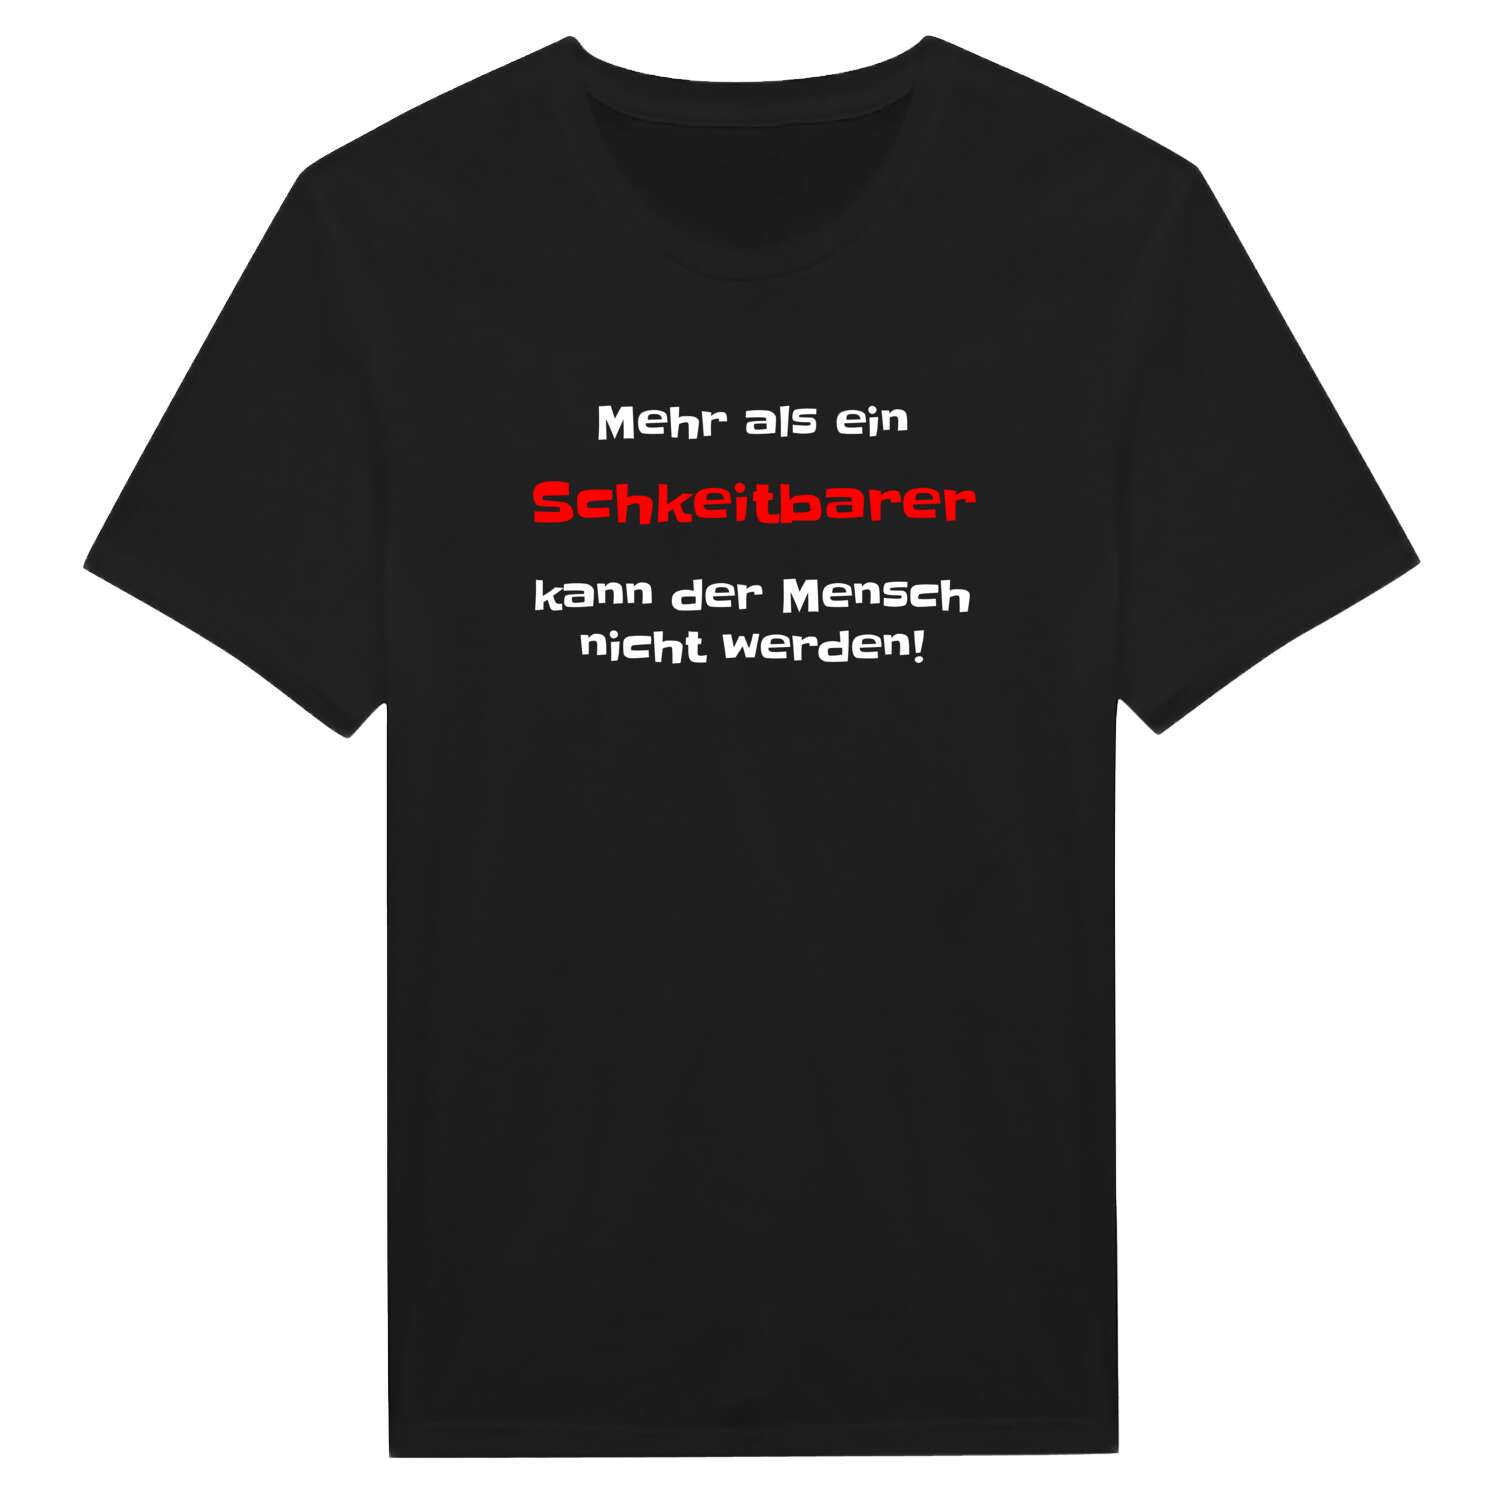 Schkeitbar T-Shirt »Mehr als ein«